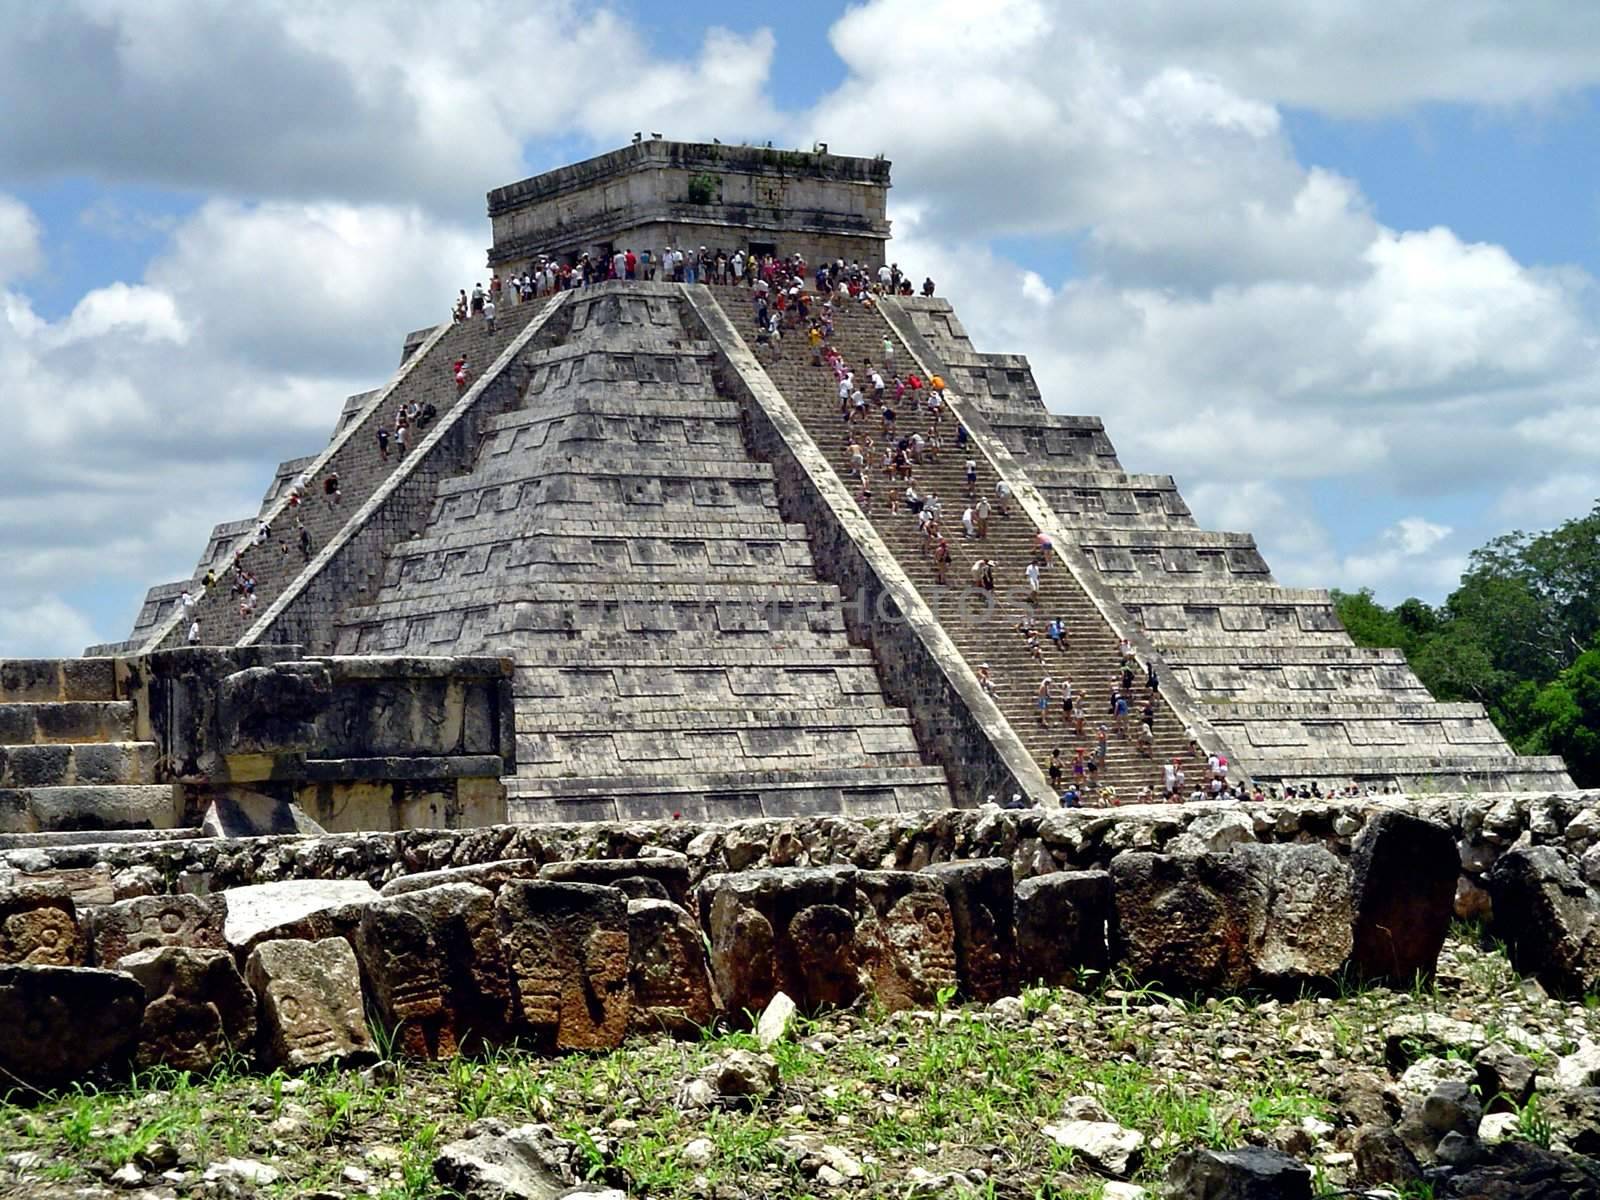 El castillo, piramide nel sito archeologico maya di Chichen Itza, Yucatan, Messico             